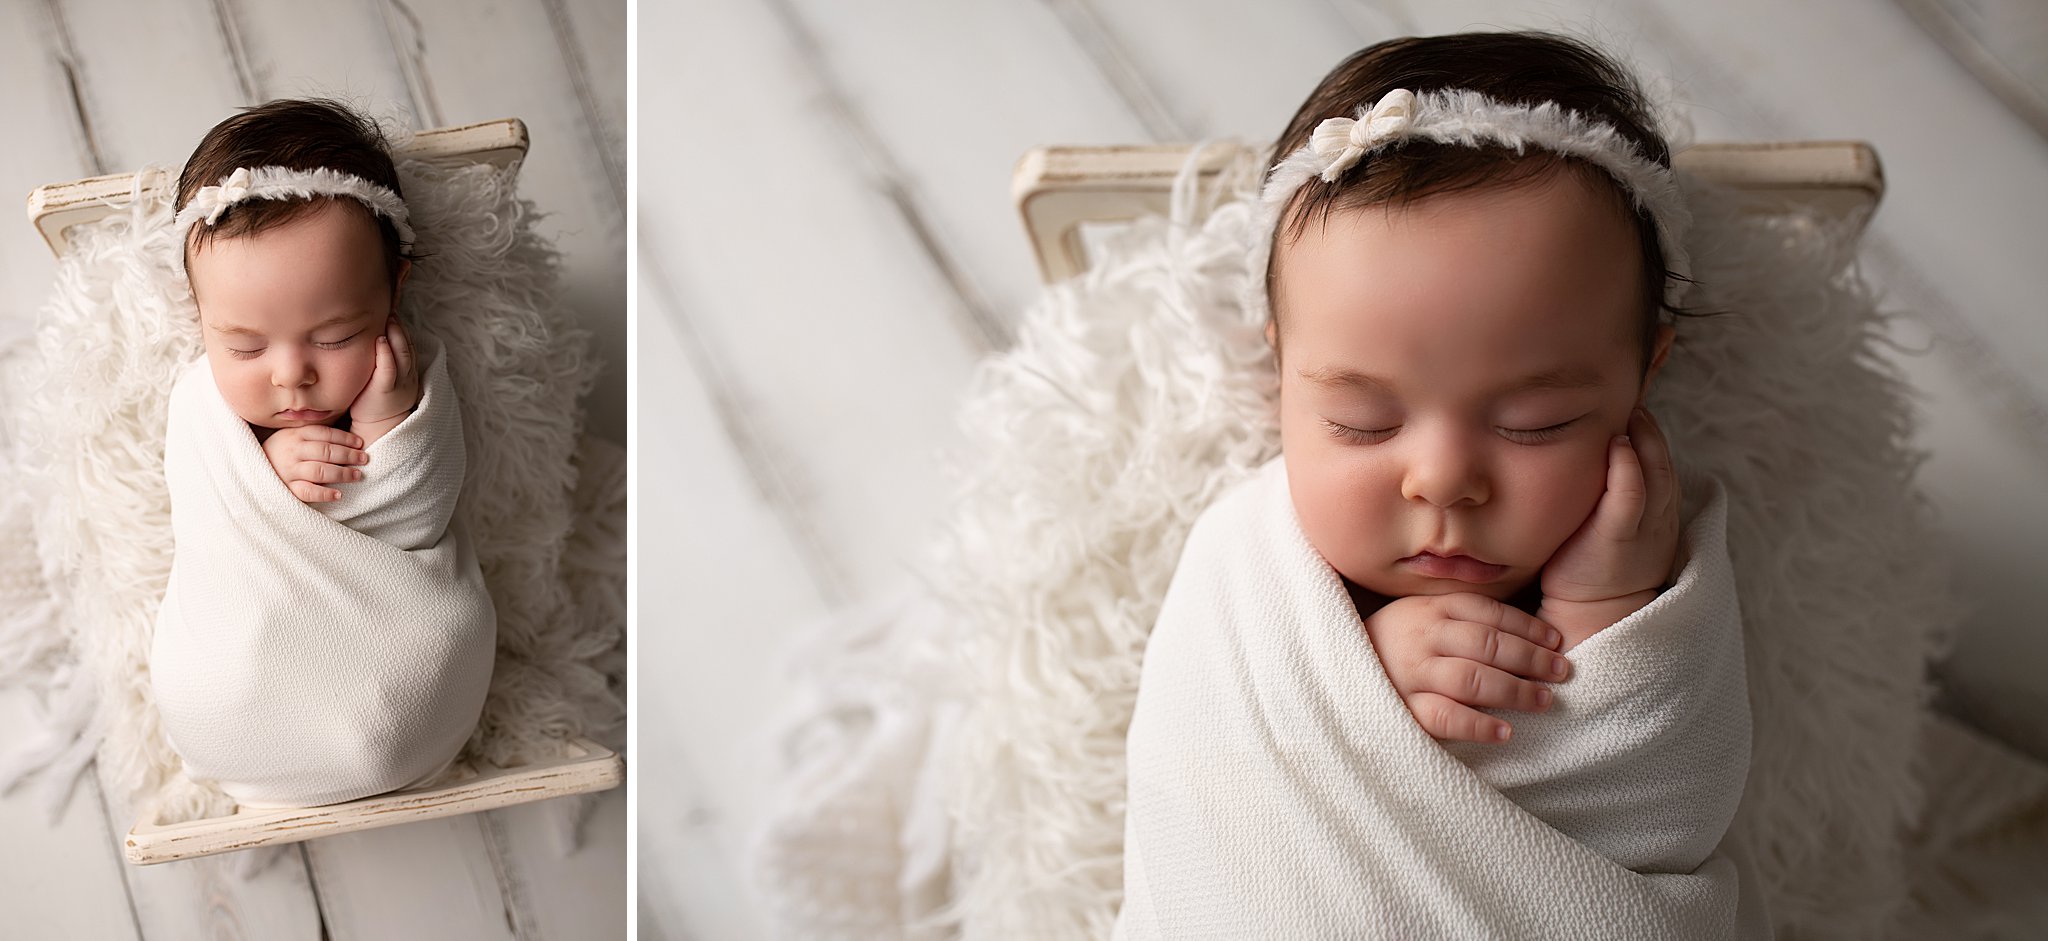 newborn studio photography baby girl white bed setup